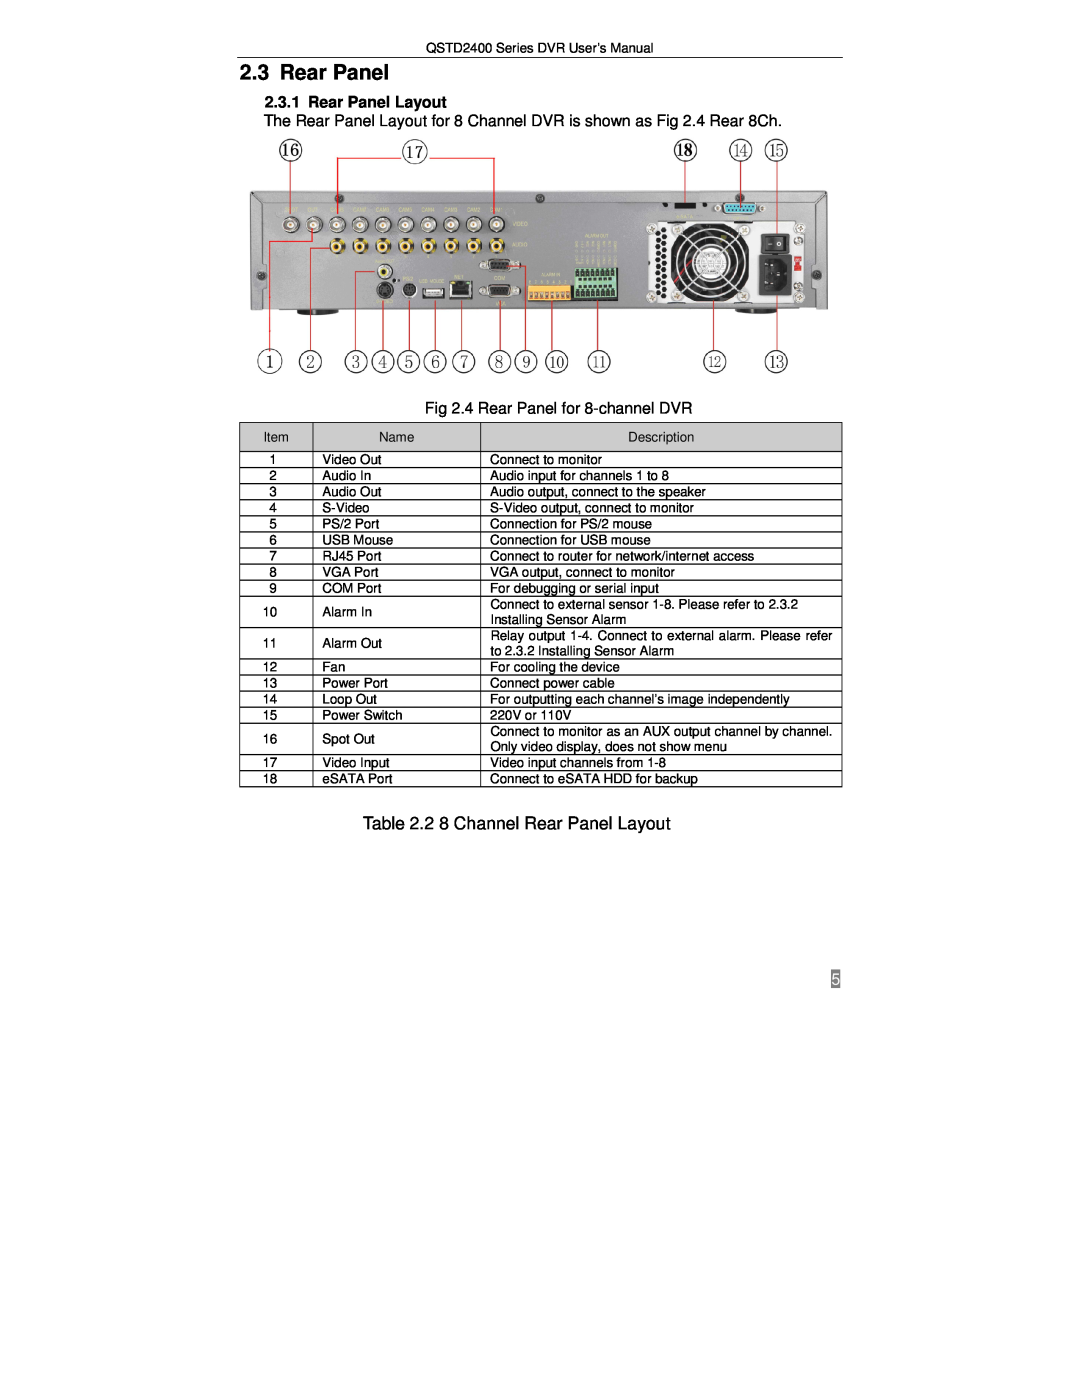 Q-See QSTD2416, QSTD2408, QSTD2404 user manual 2.3Rear Panel, 2 8 Channel Rear Panel Layout 